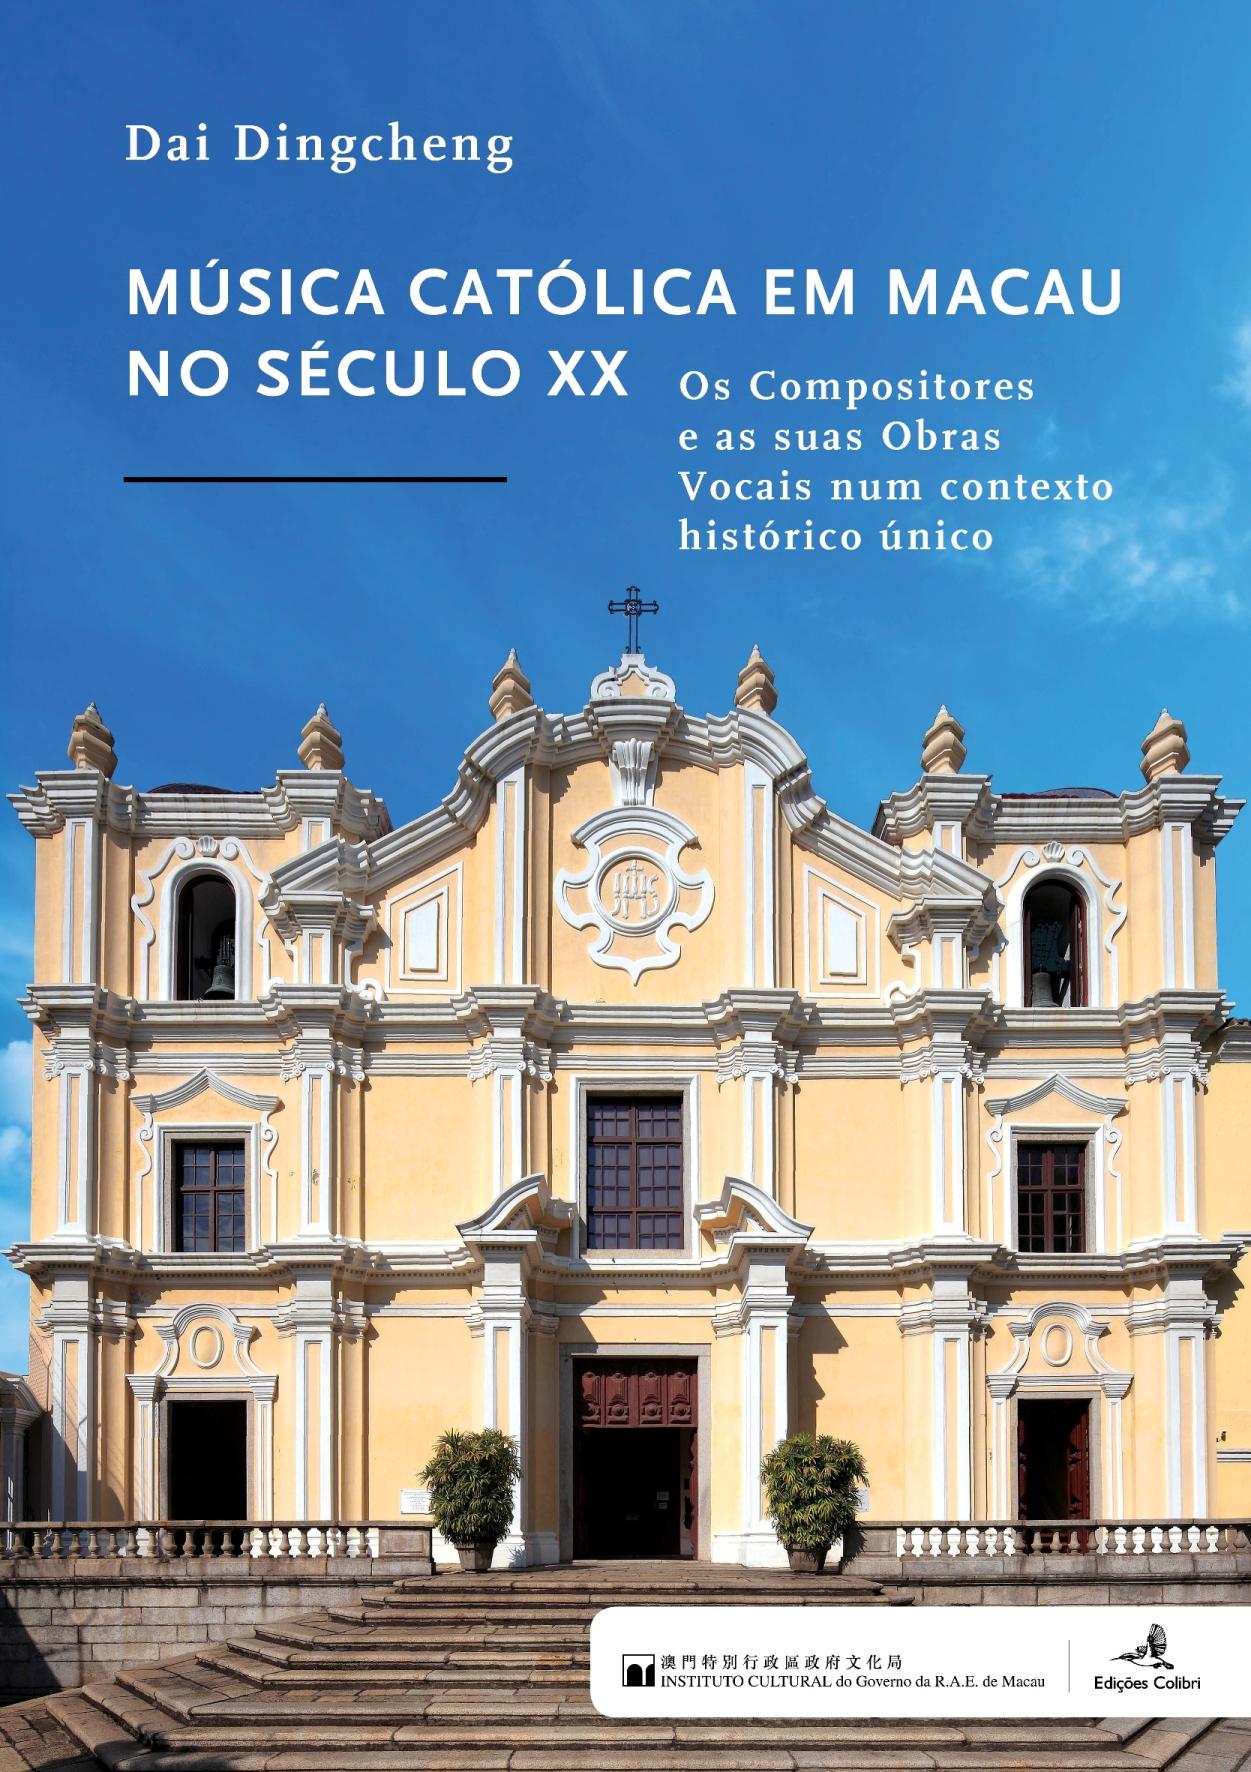 Livro | Lançada em Lisboa versão portuguesa de “Música Católica em Macau no Século XX”